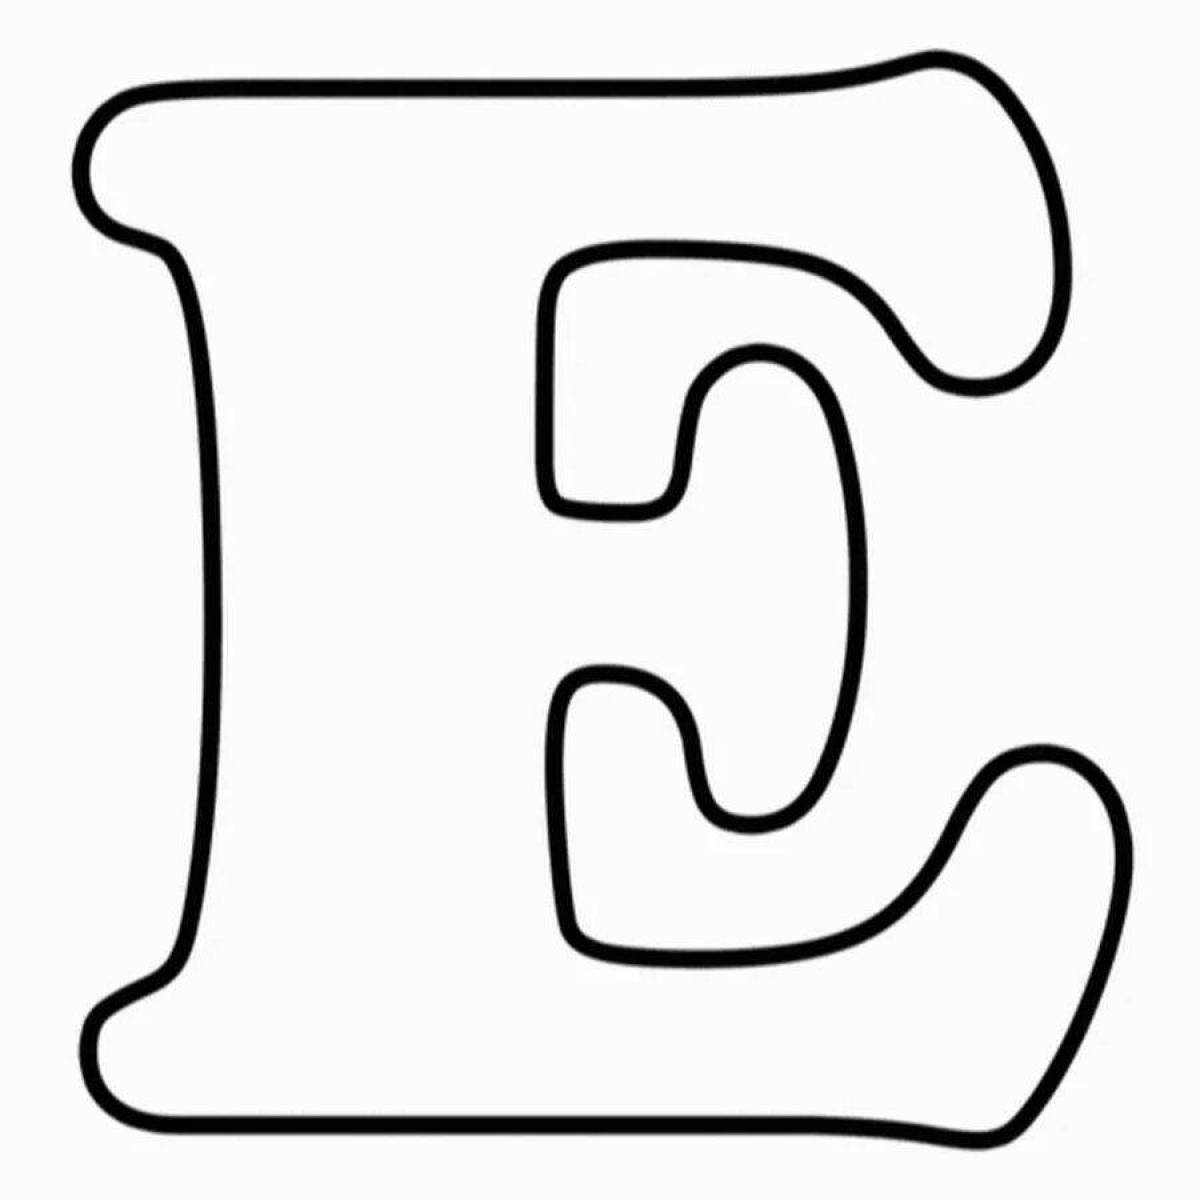 Жирная раскраска буквы русского алфавита по отдельности